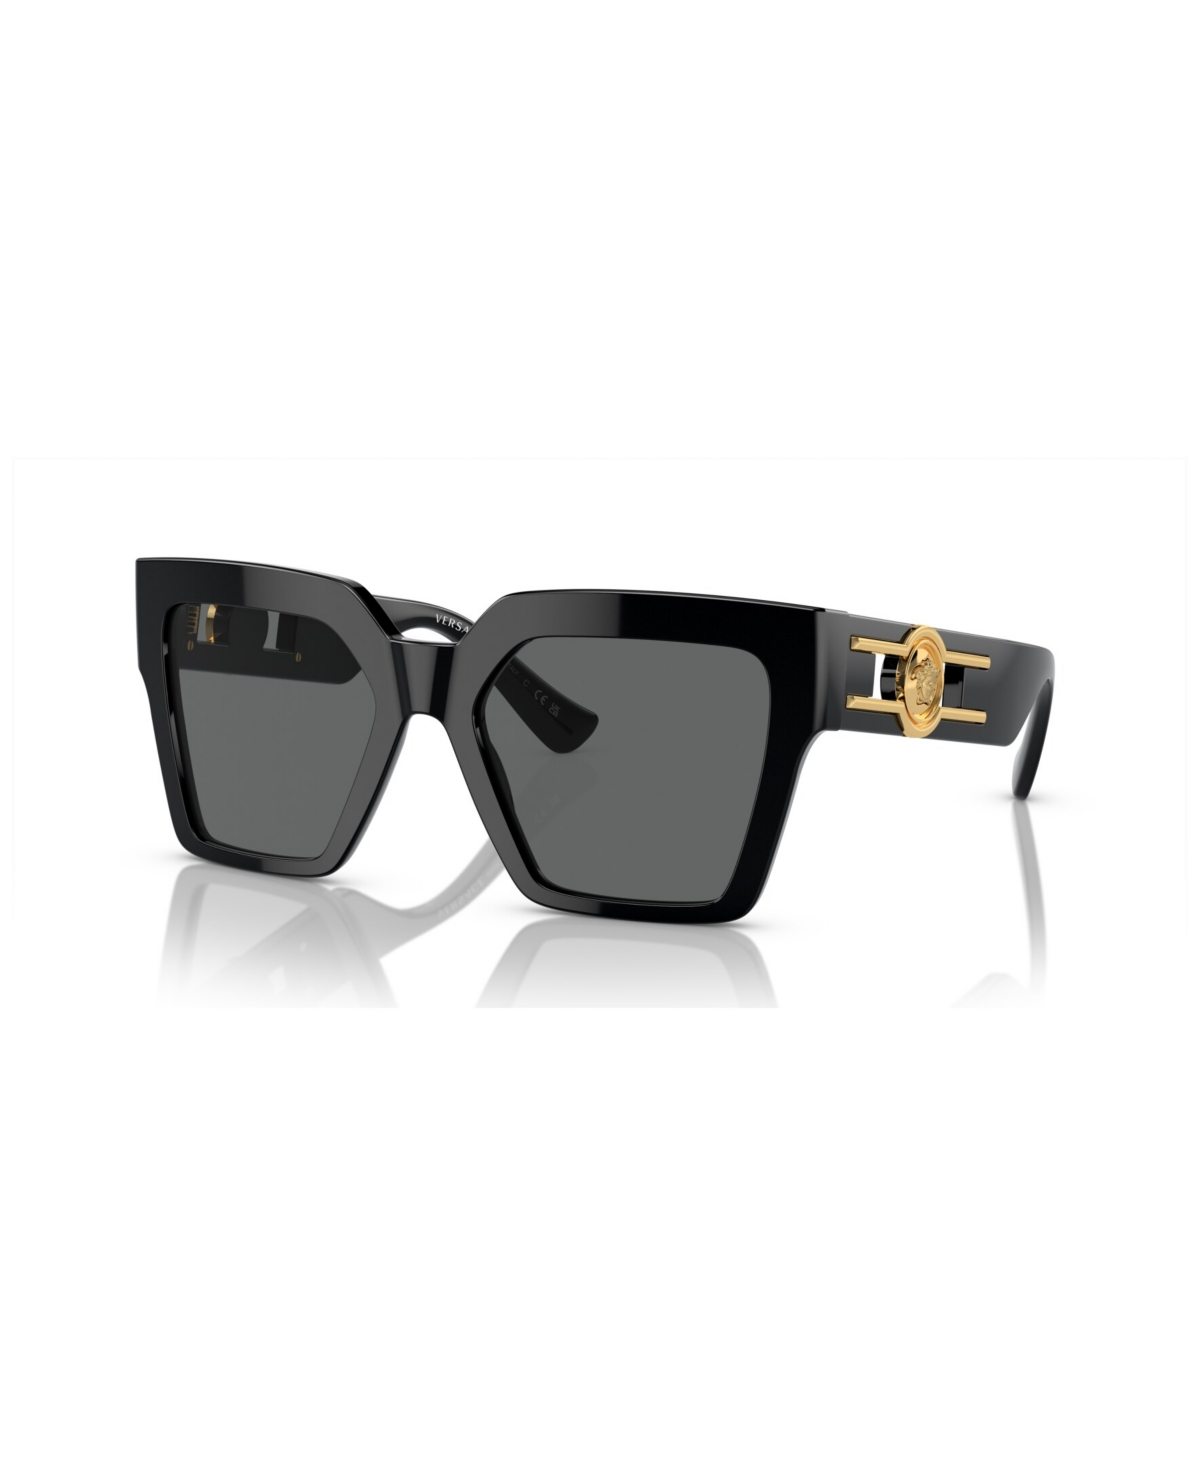 Women's Sunglasses VE4458 - Black